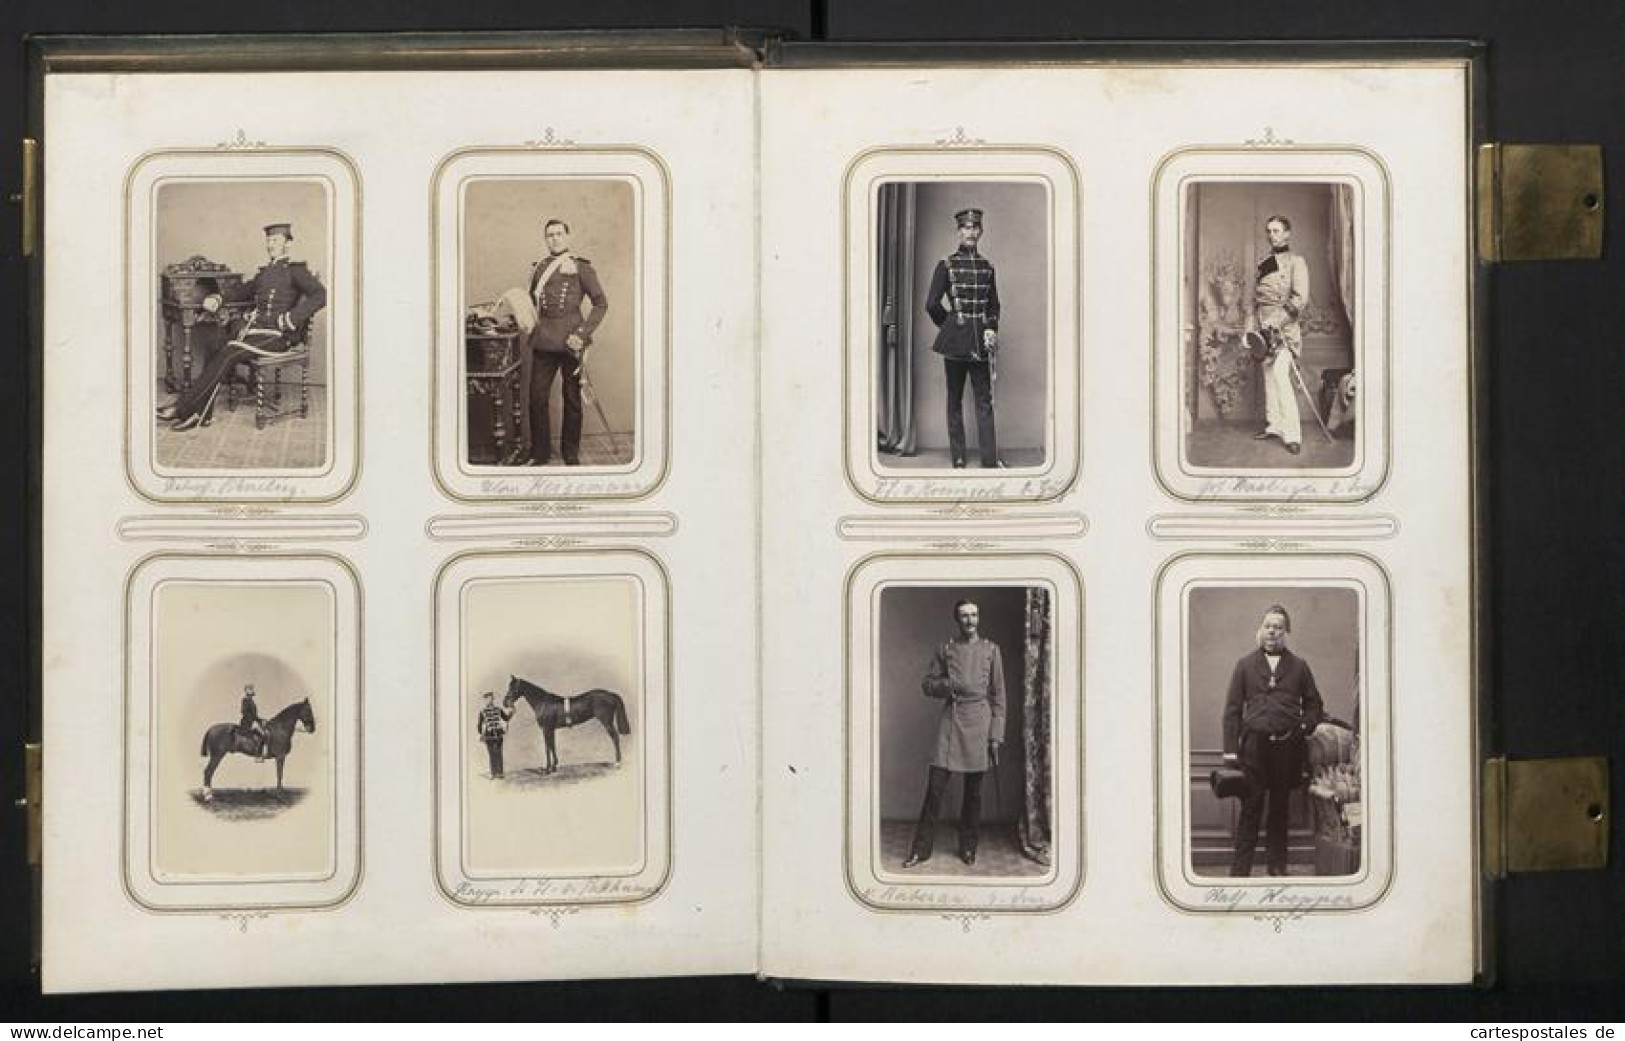 Fotoalbum mit 100 CDV-Fotografien Schwedt a. d. Oder, Militär-Reitschule 1863 /64, Offiziere, Kürassier, Kaserne, Un 